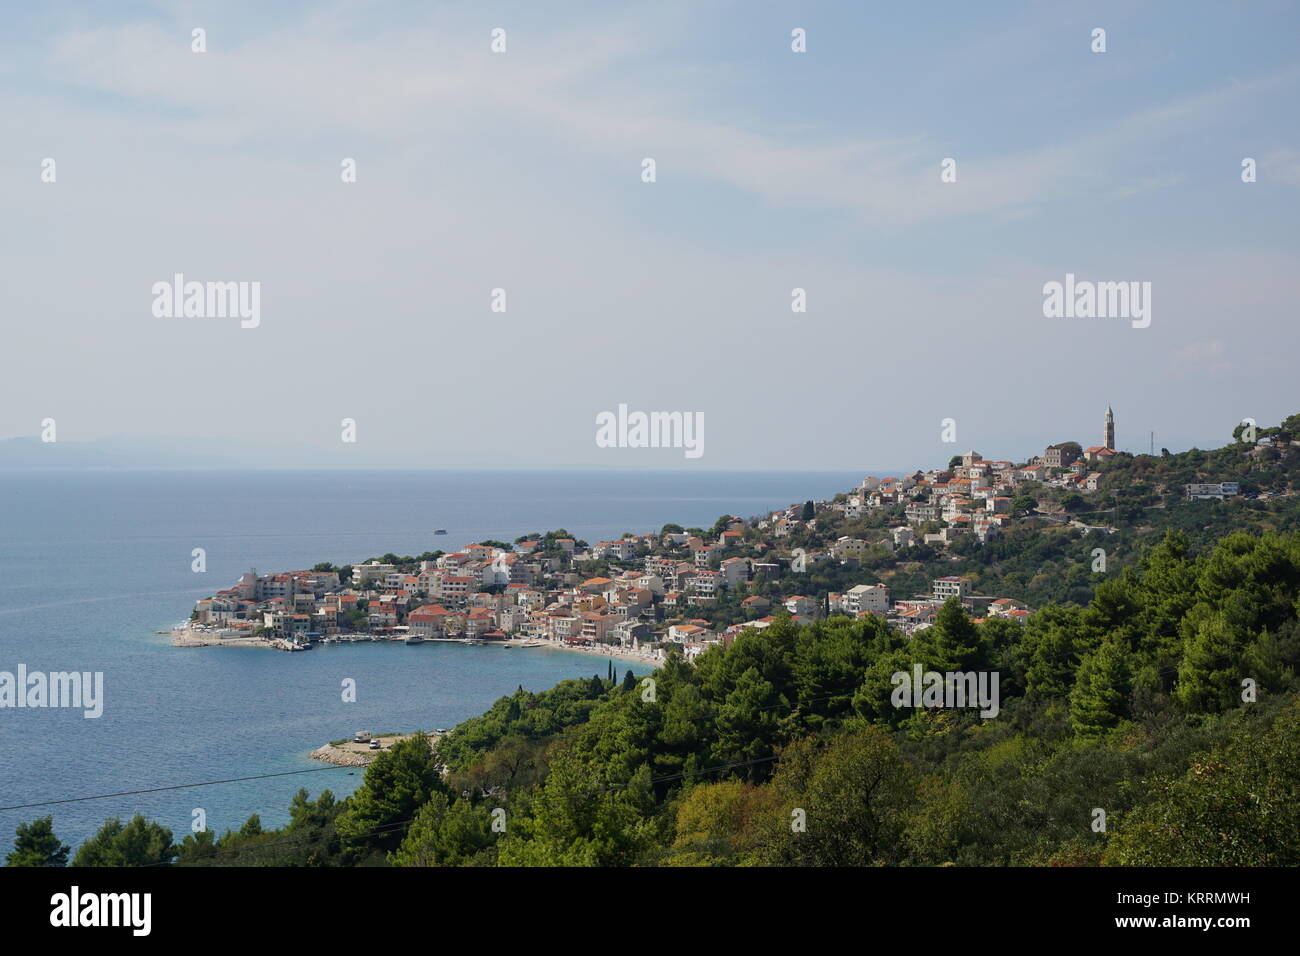 idyllic little town on the mediterranean Stock Photo